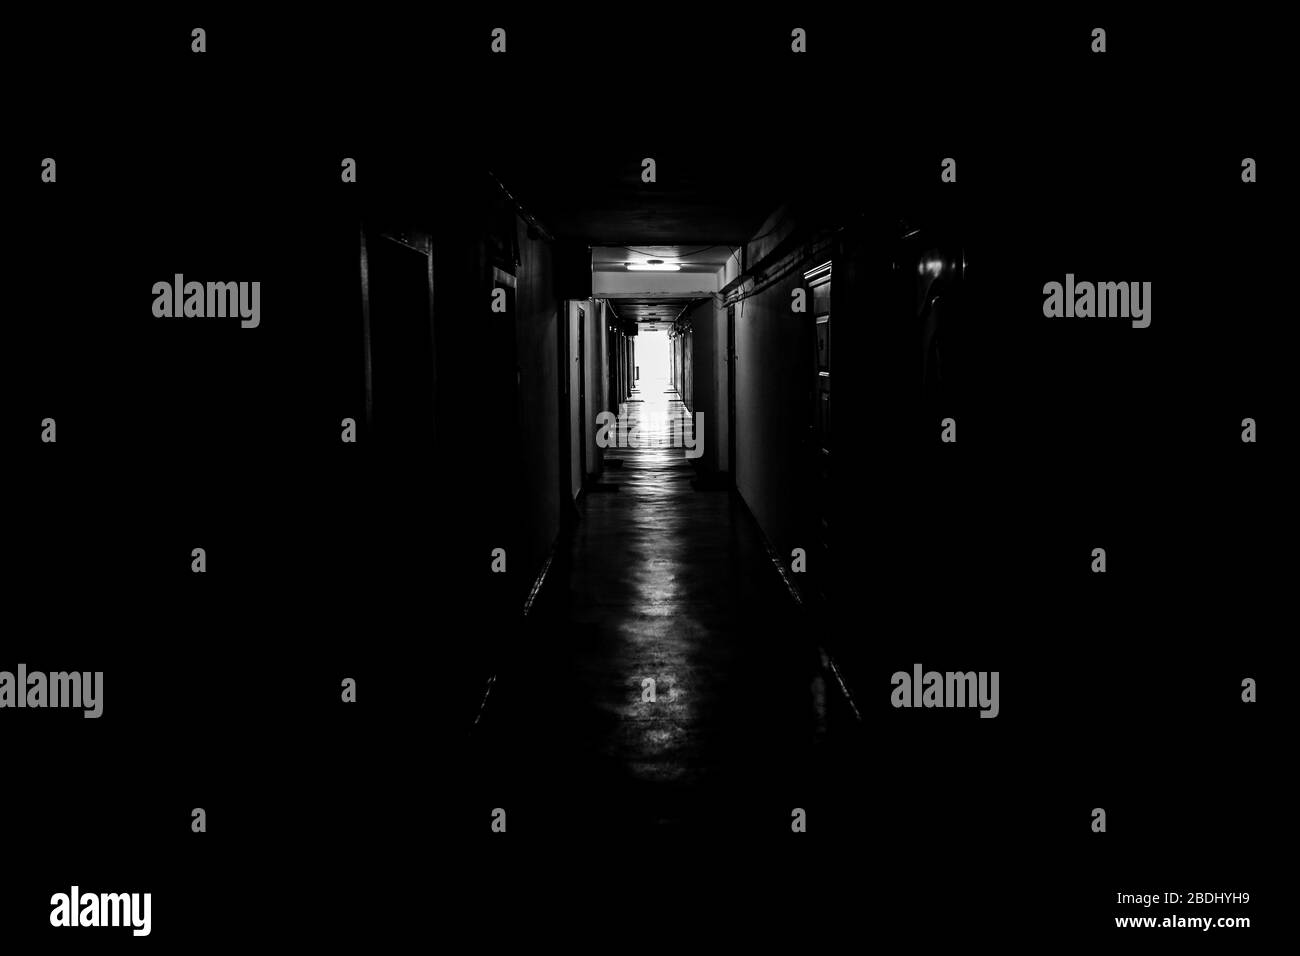 Image en noir et blanc avec un couloir d'humeur sombre avec des portes d'appartement de chaque côté - la lumière au bout du tunnel. Banque D'Images